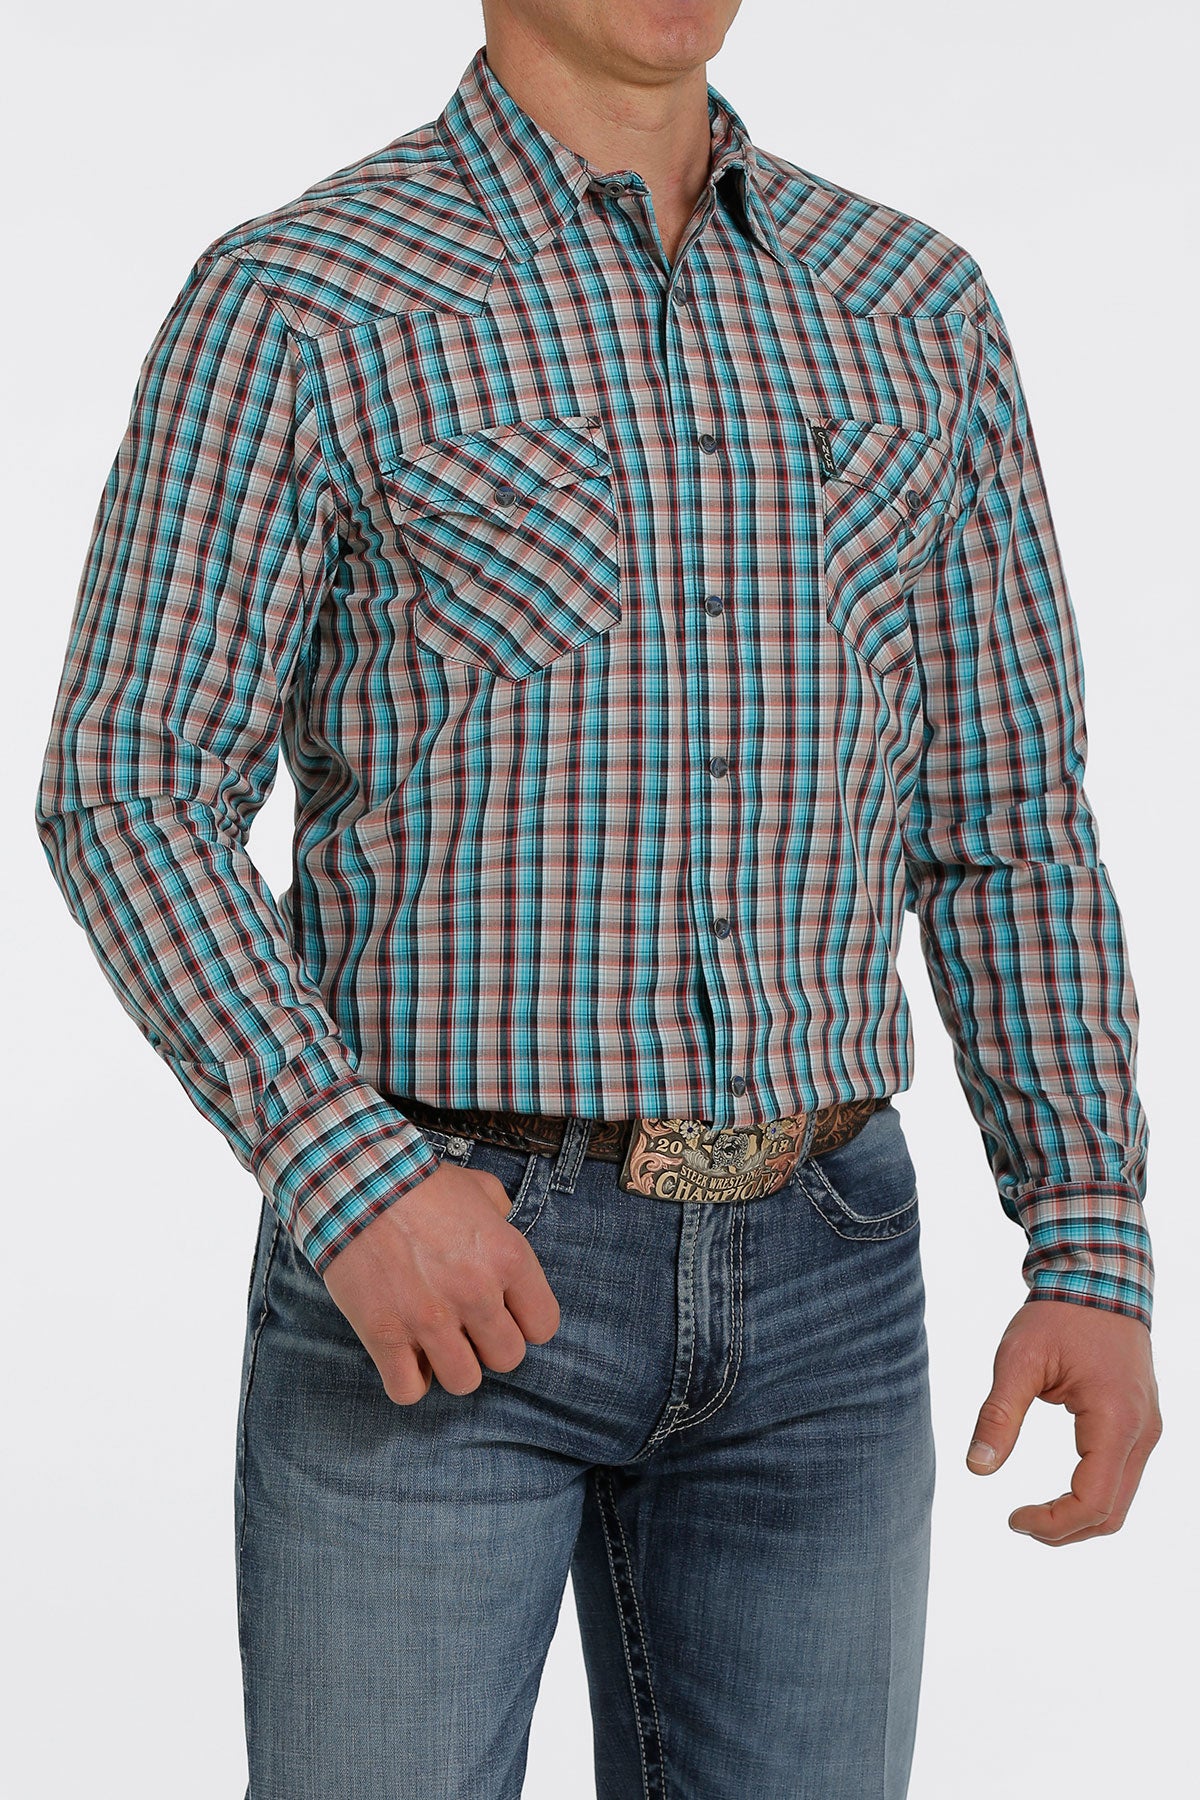 Cinch Long Sleeve Plaid Modern Fit Button Up Shirt